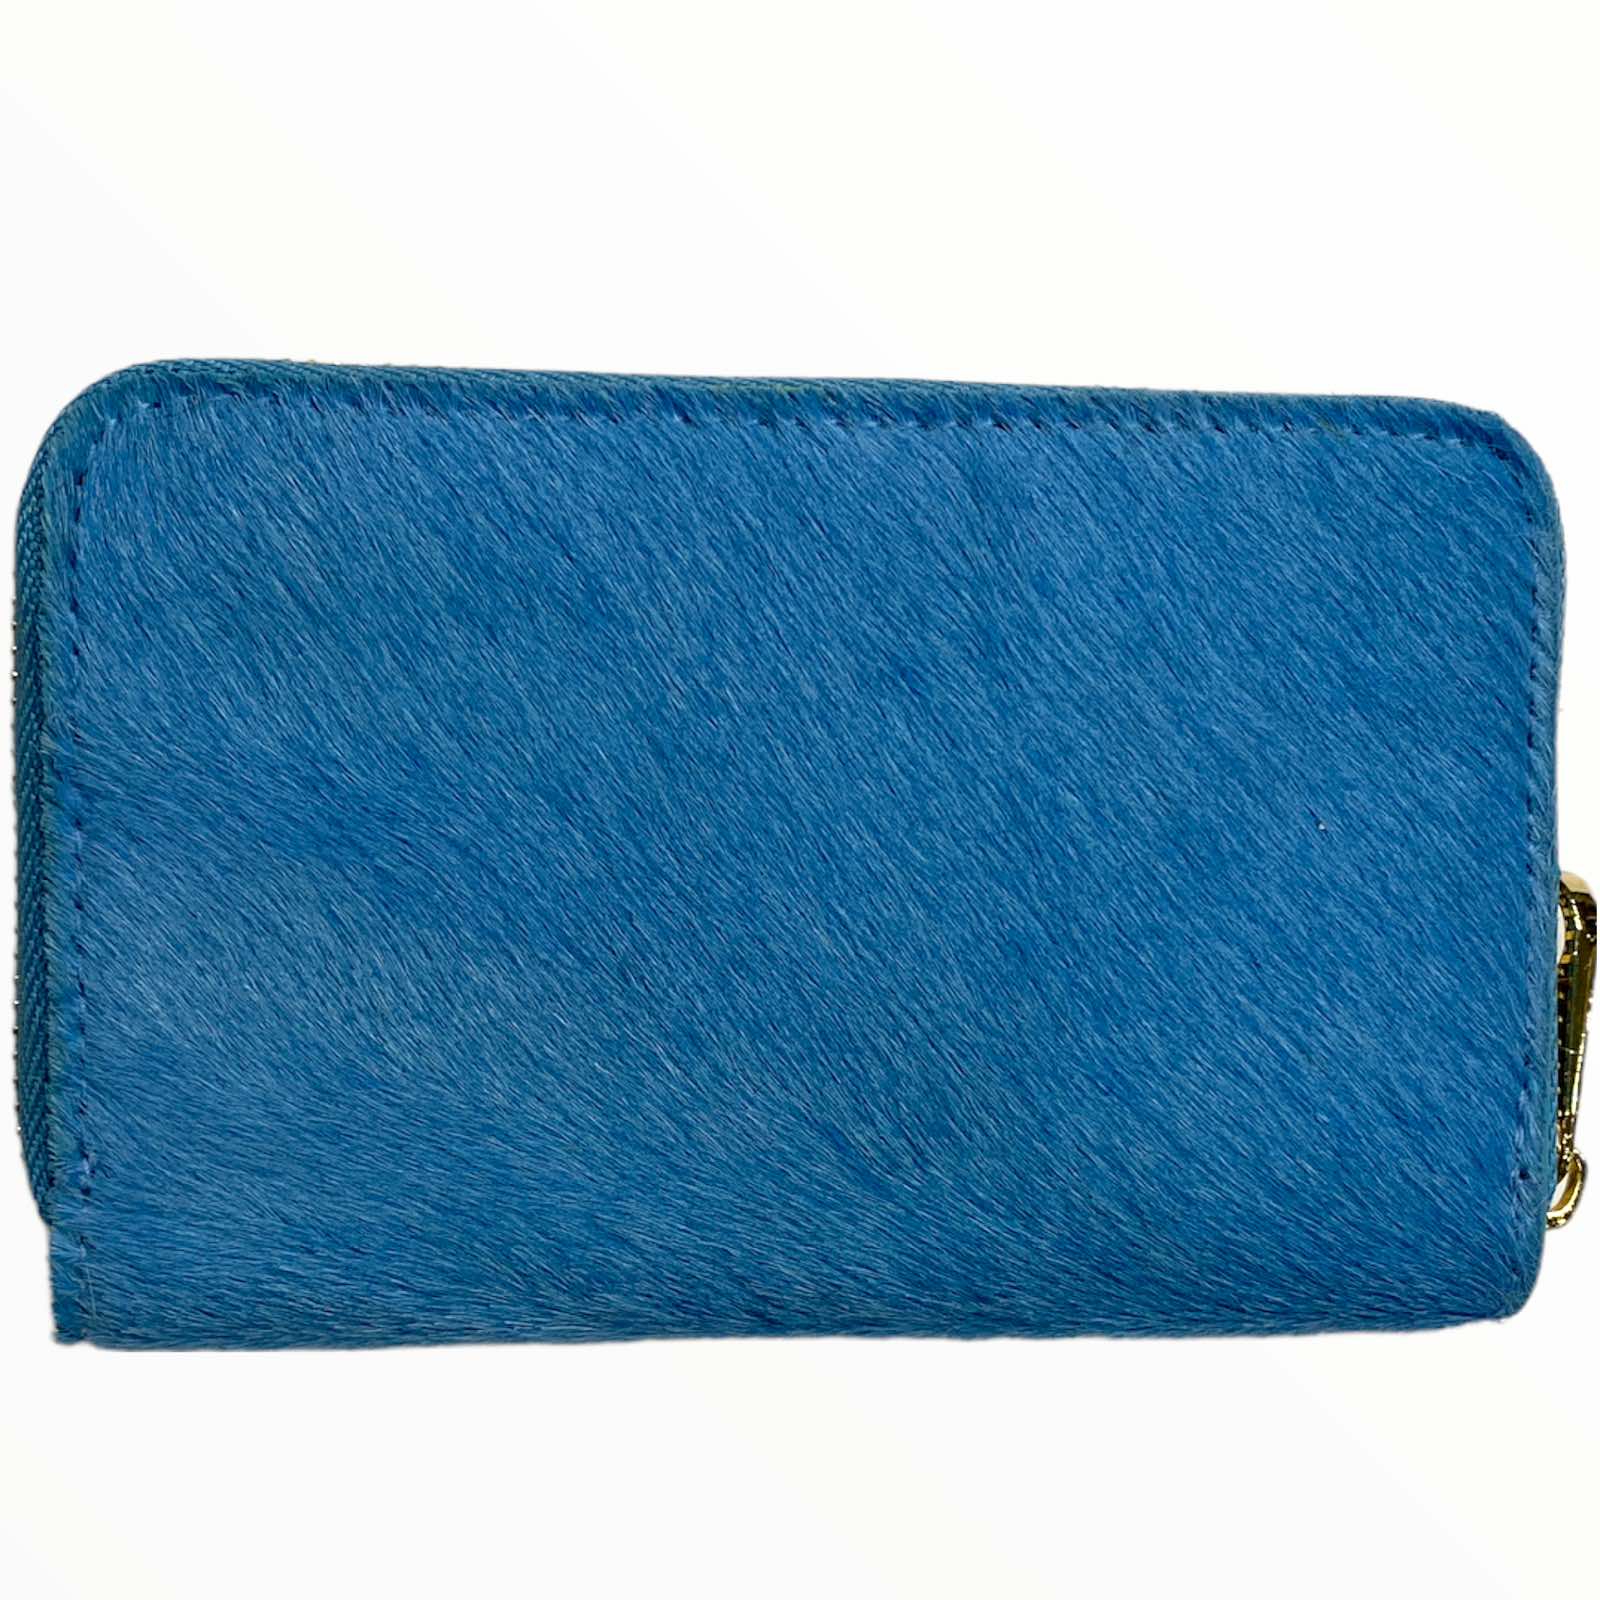 Sky blue calf-hair leather medium wallet